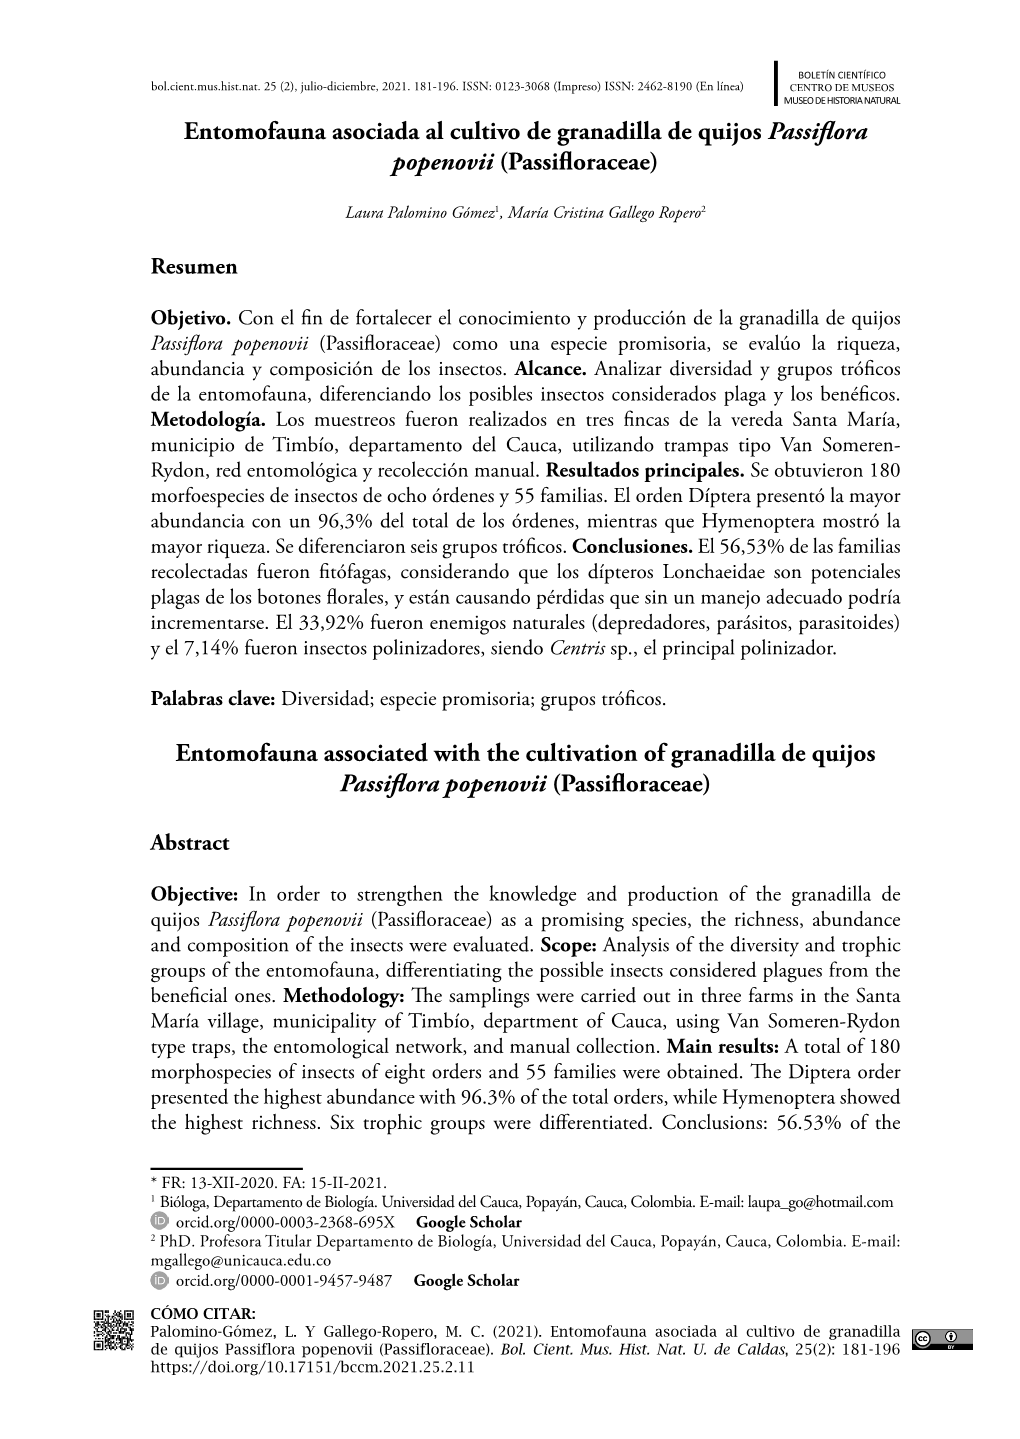 Entomofauna Asociada Al Cultivo De Granadilla De Quijos Passiflora Popenovii (Passifloraceae)